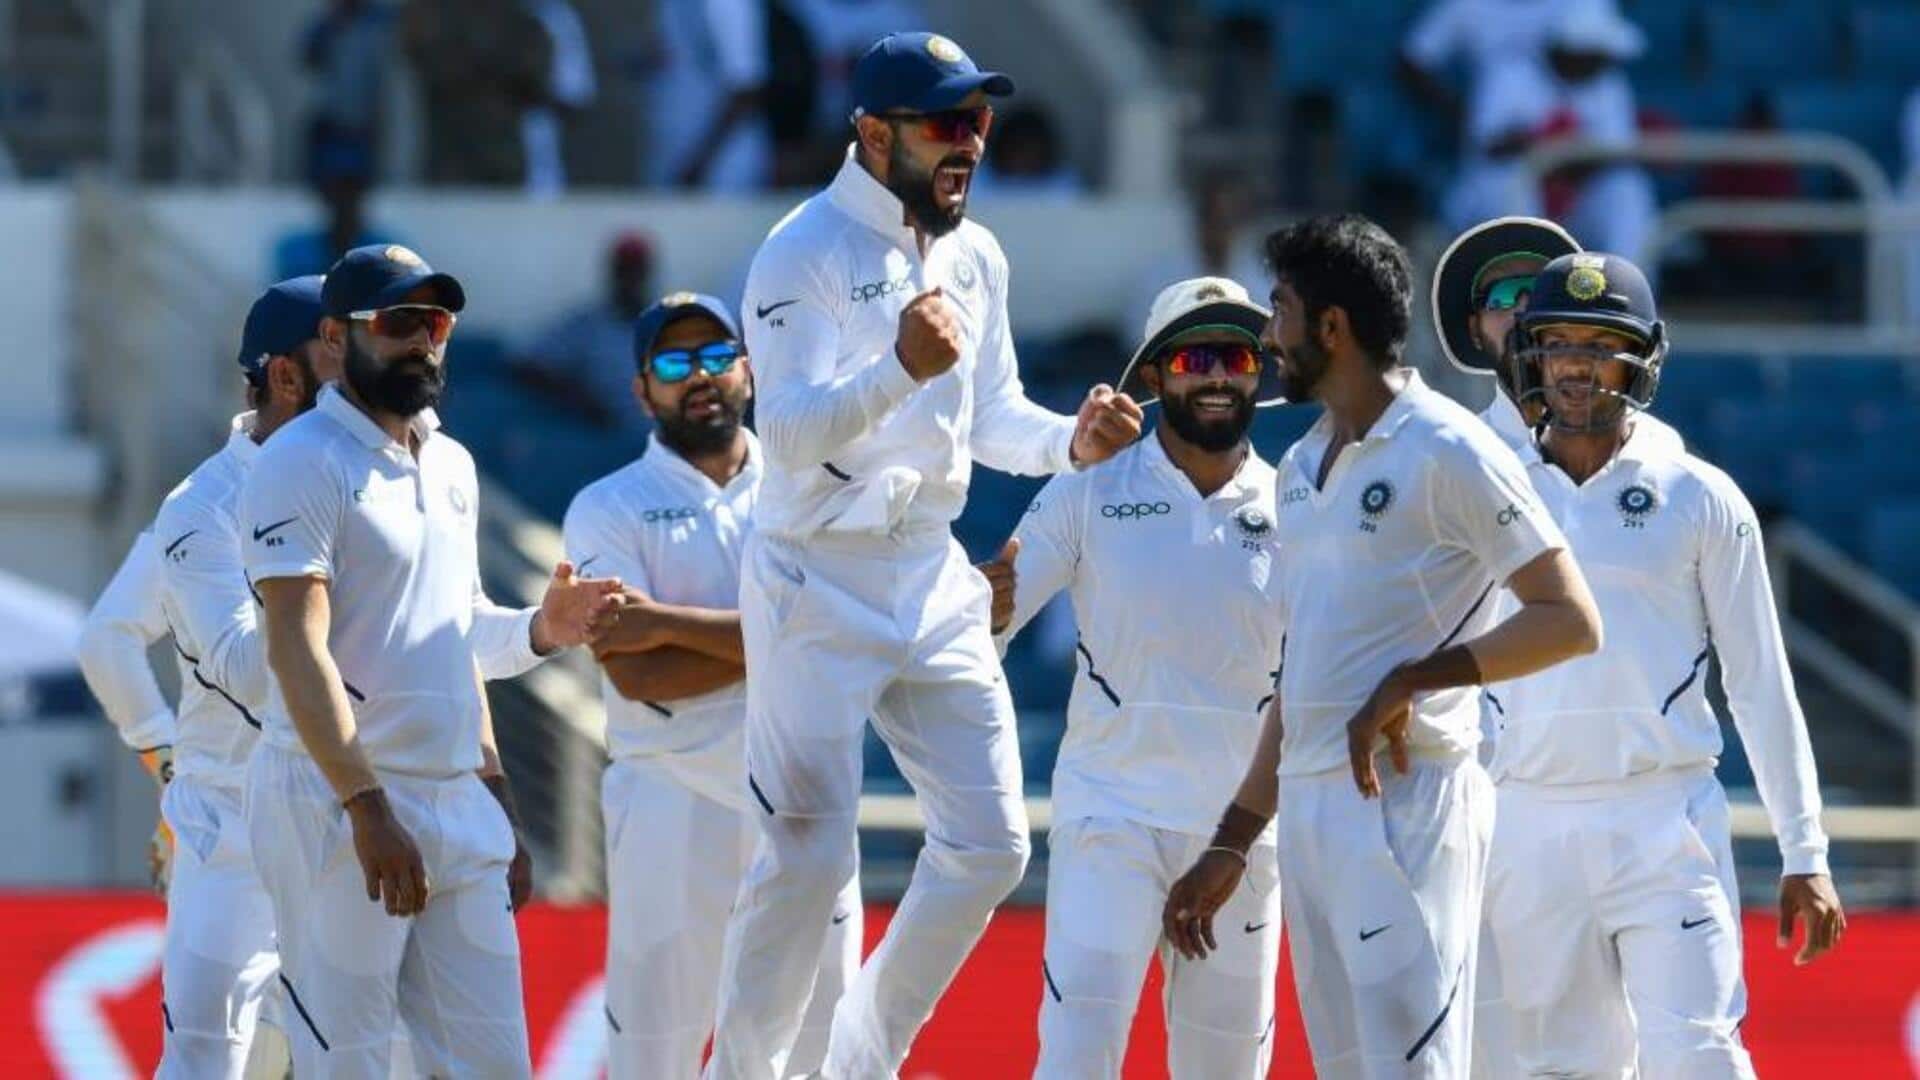 राजीव गांधी स्टेडियम पर भारत ने नहीं हारा है कोई टेस्ट, जानिए कैसा रहा है प्रदर्शन 